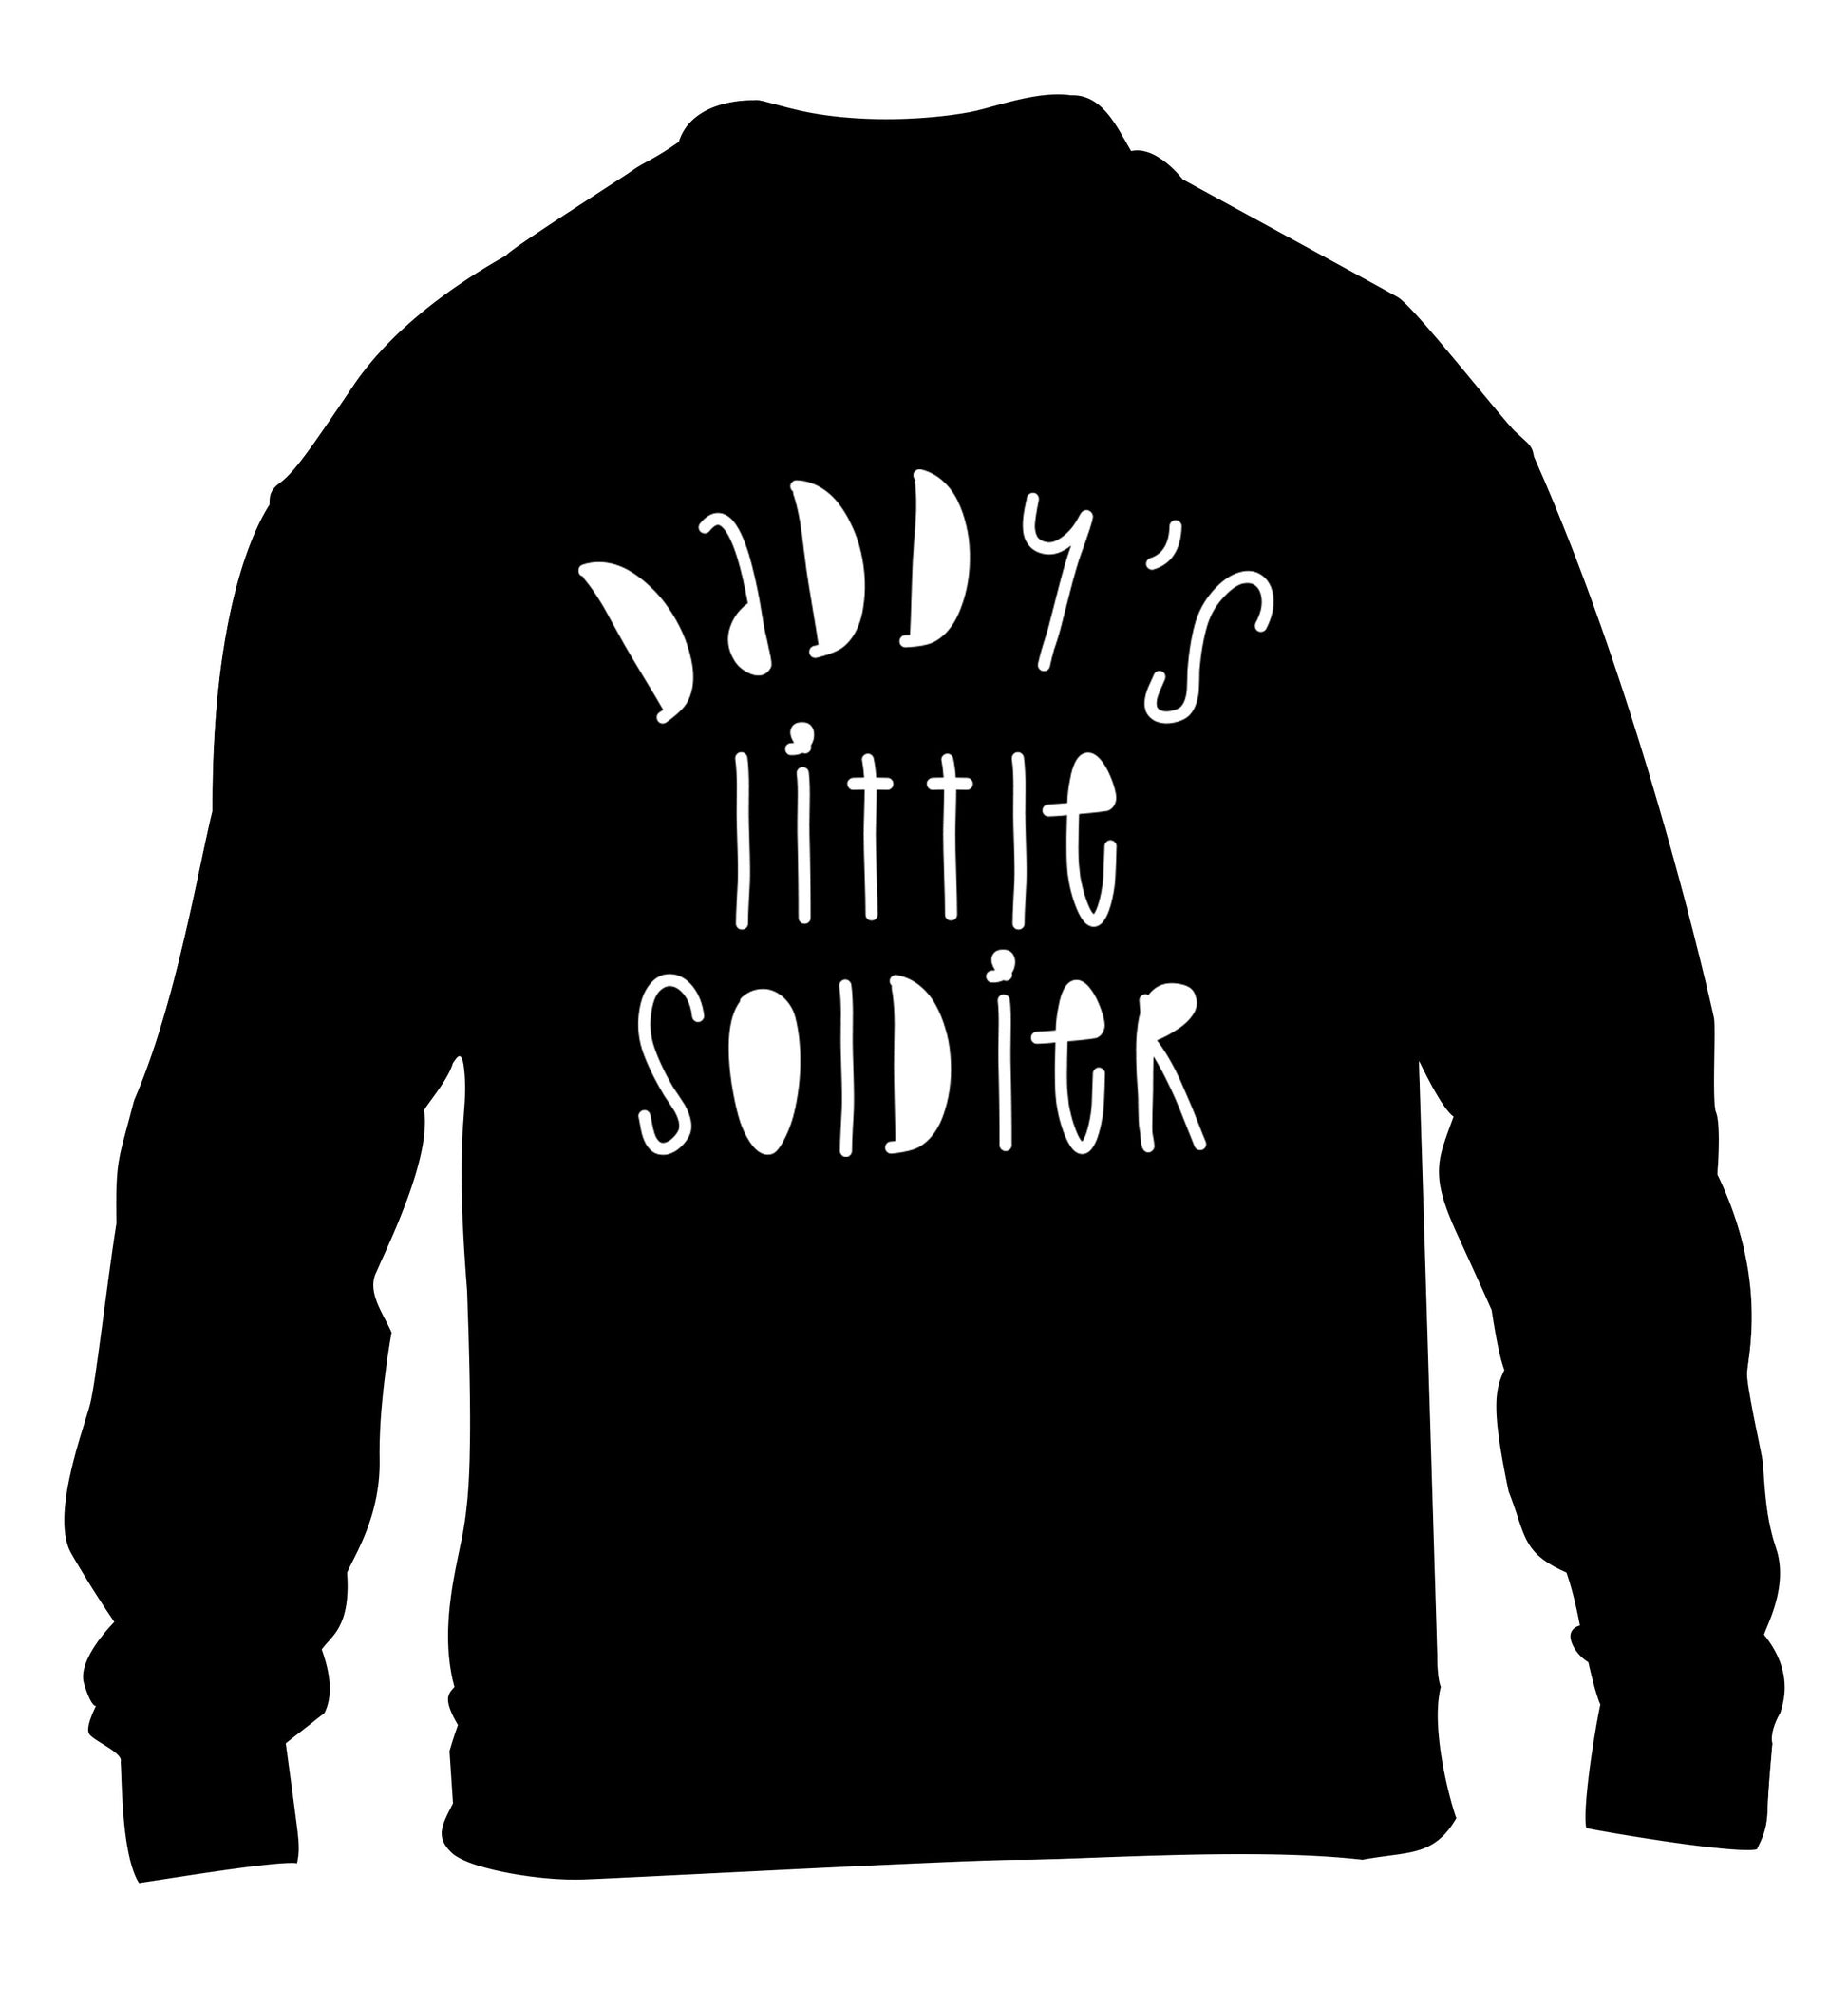 Daddy's little soldier children's black sweater 12-14 Years